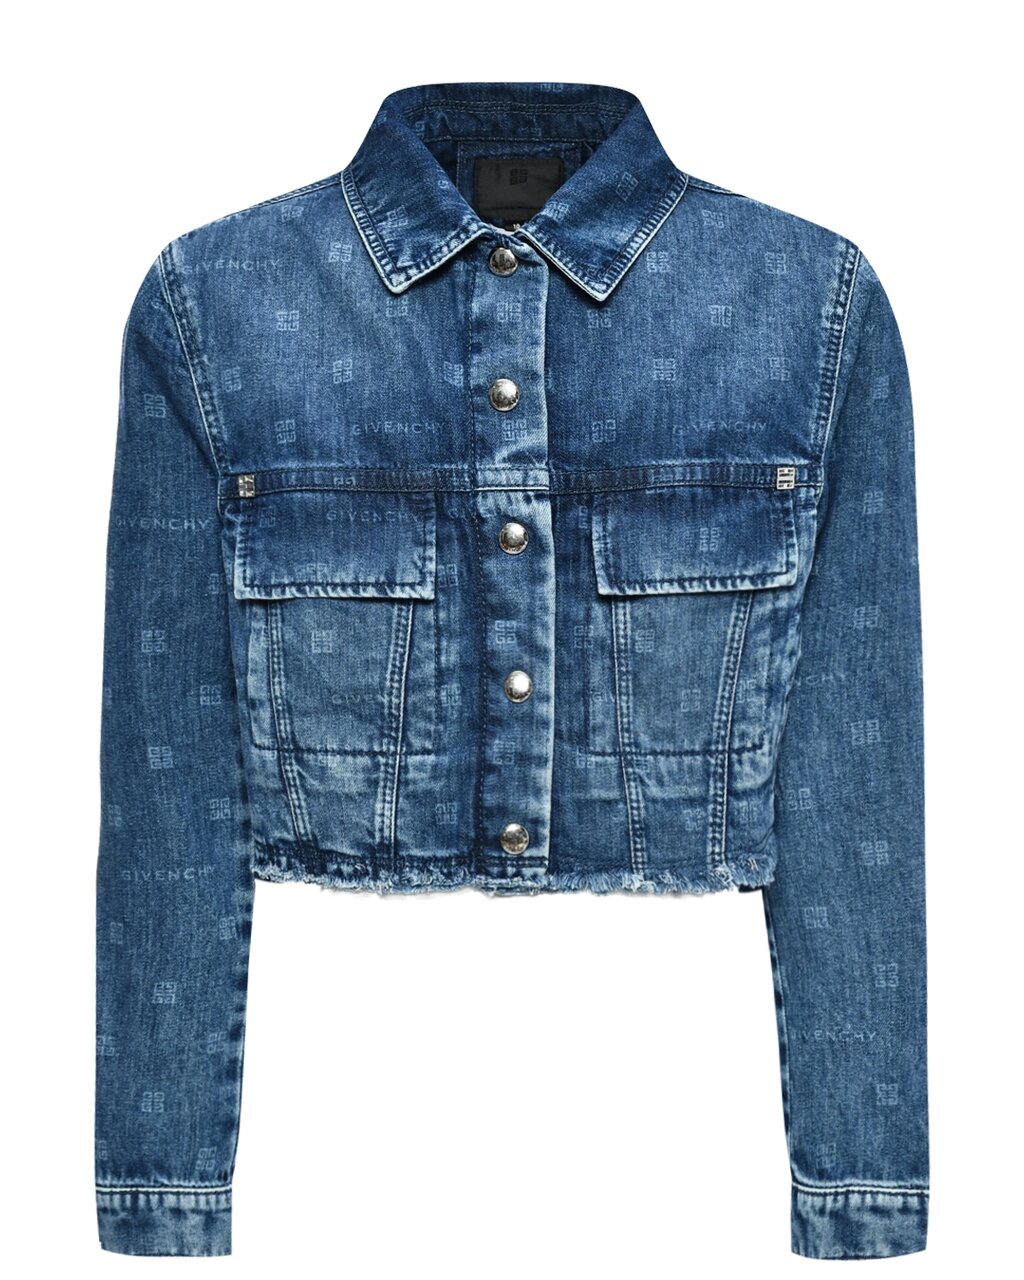 Куртка джинсовая укороченная со слошным лого Givenchy от компании Admi - фото 1